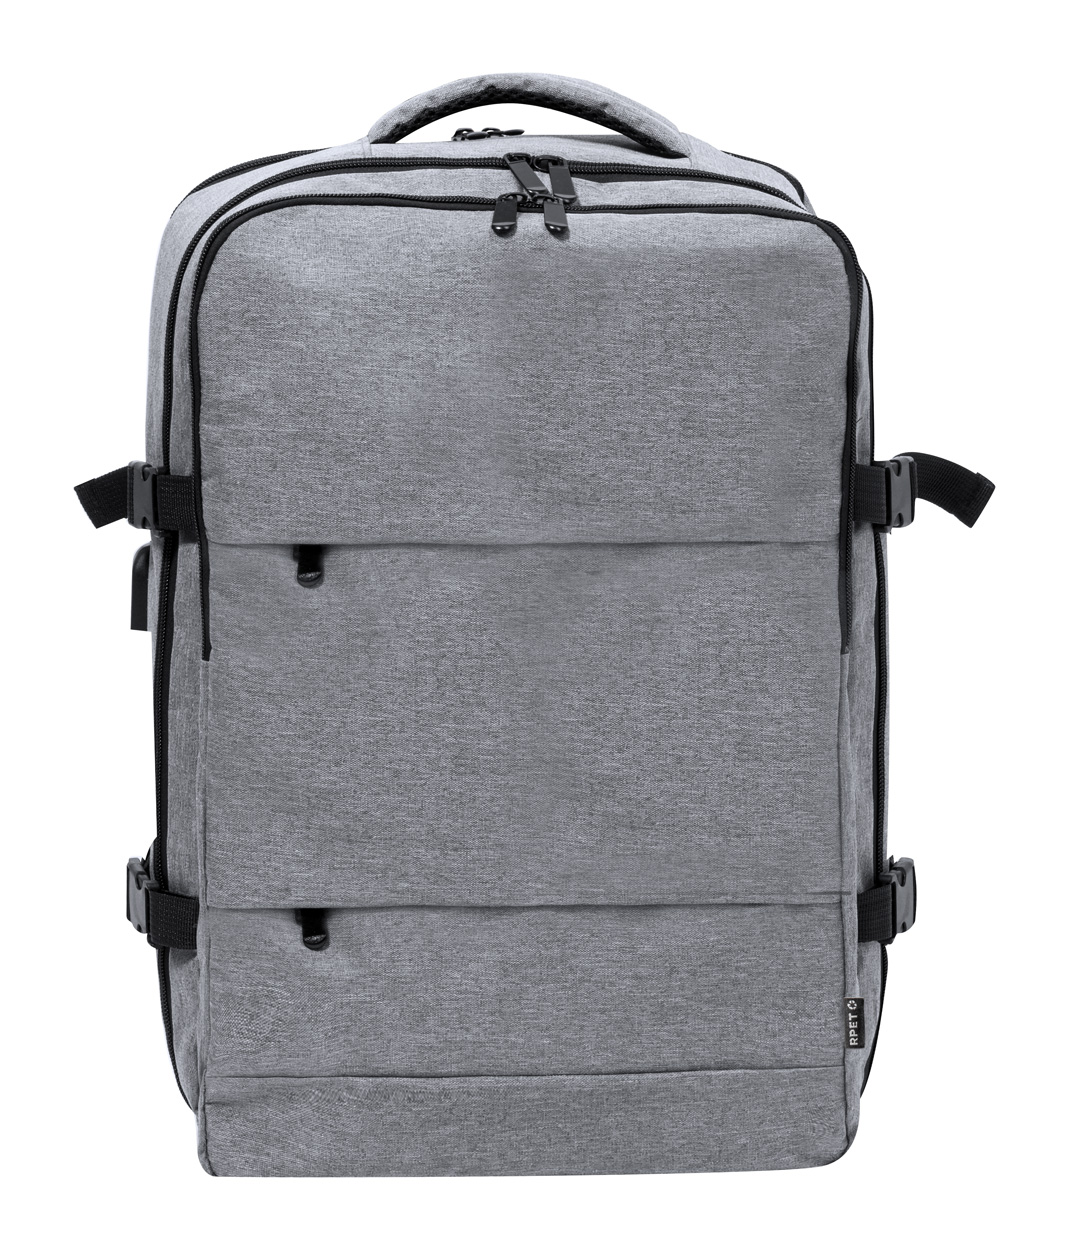 Myriax backpack - Grau